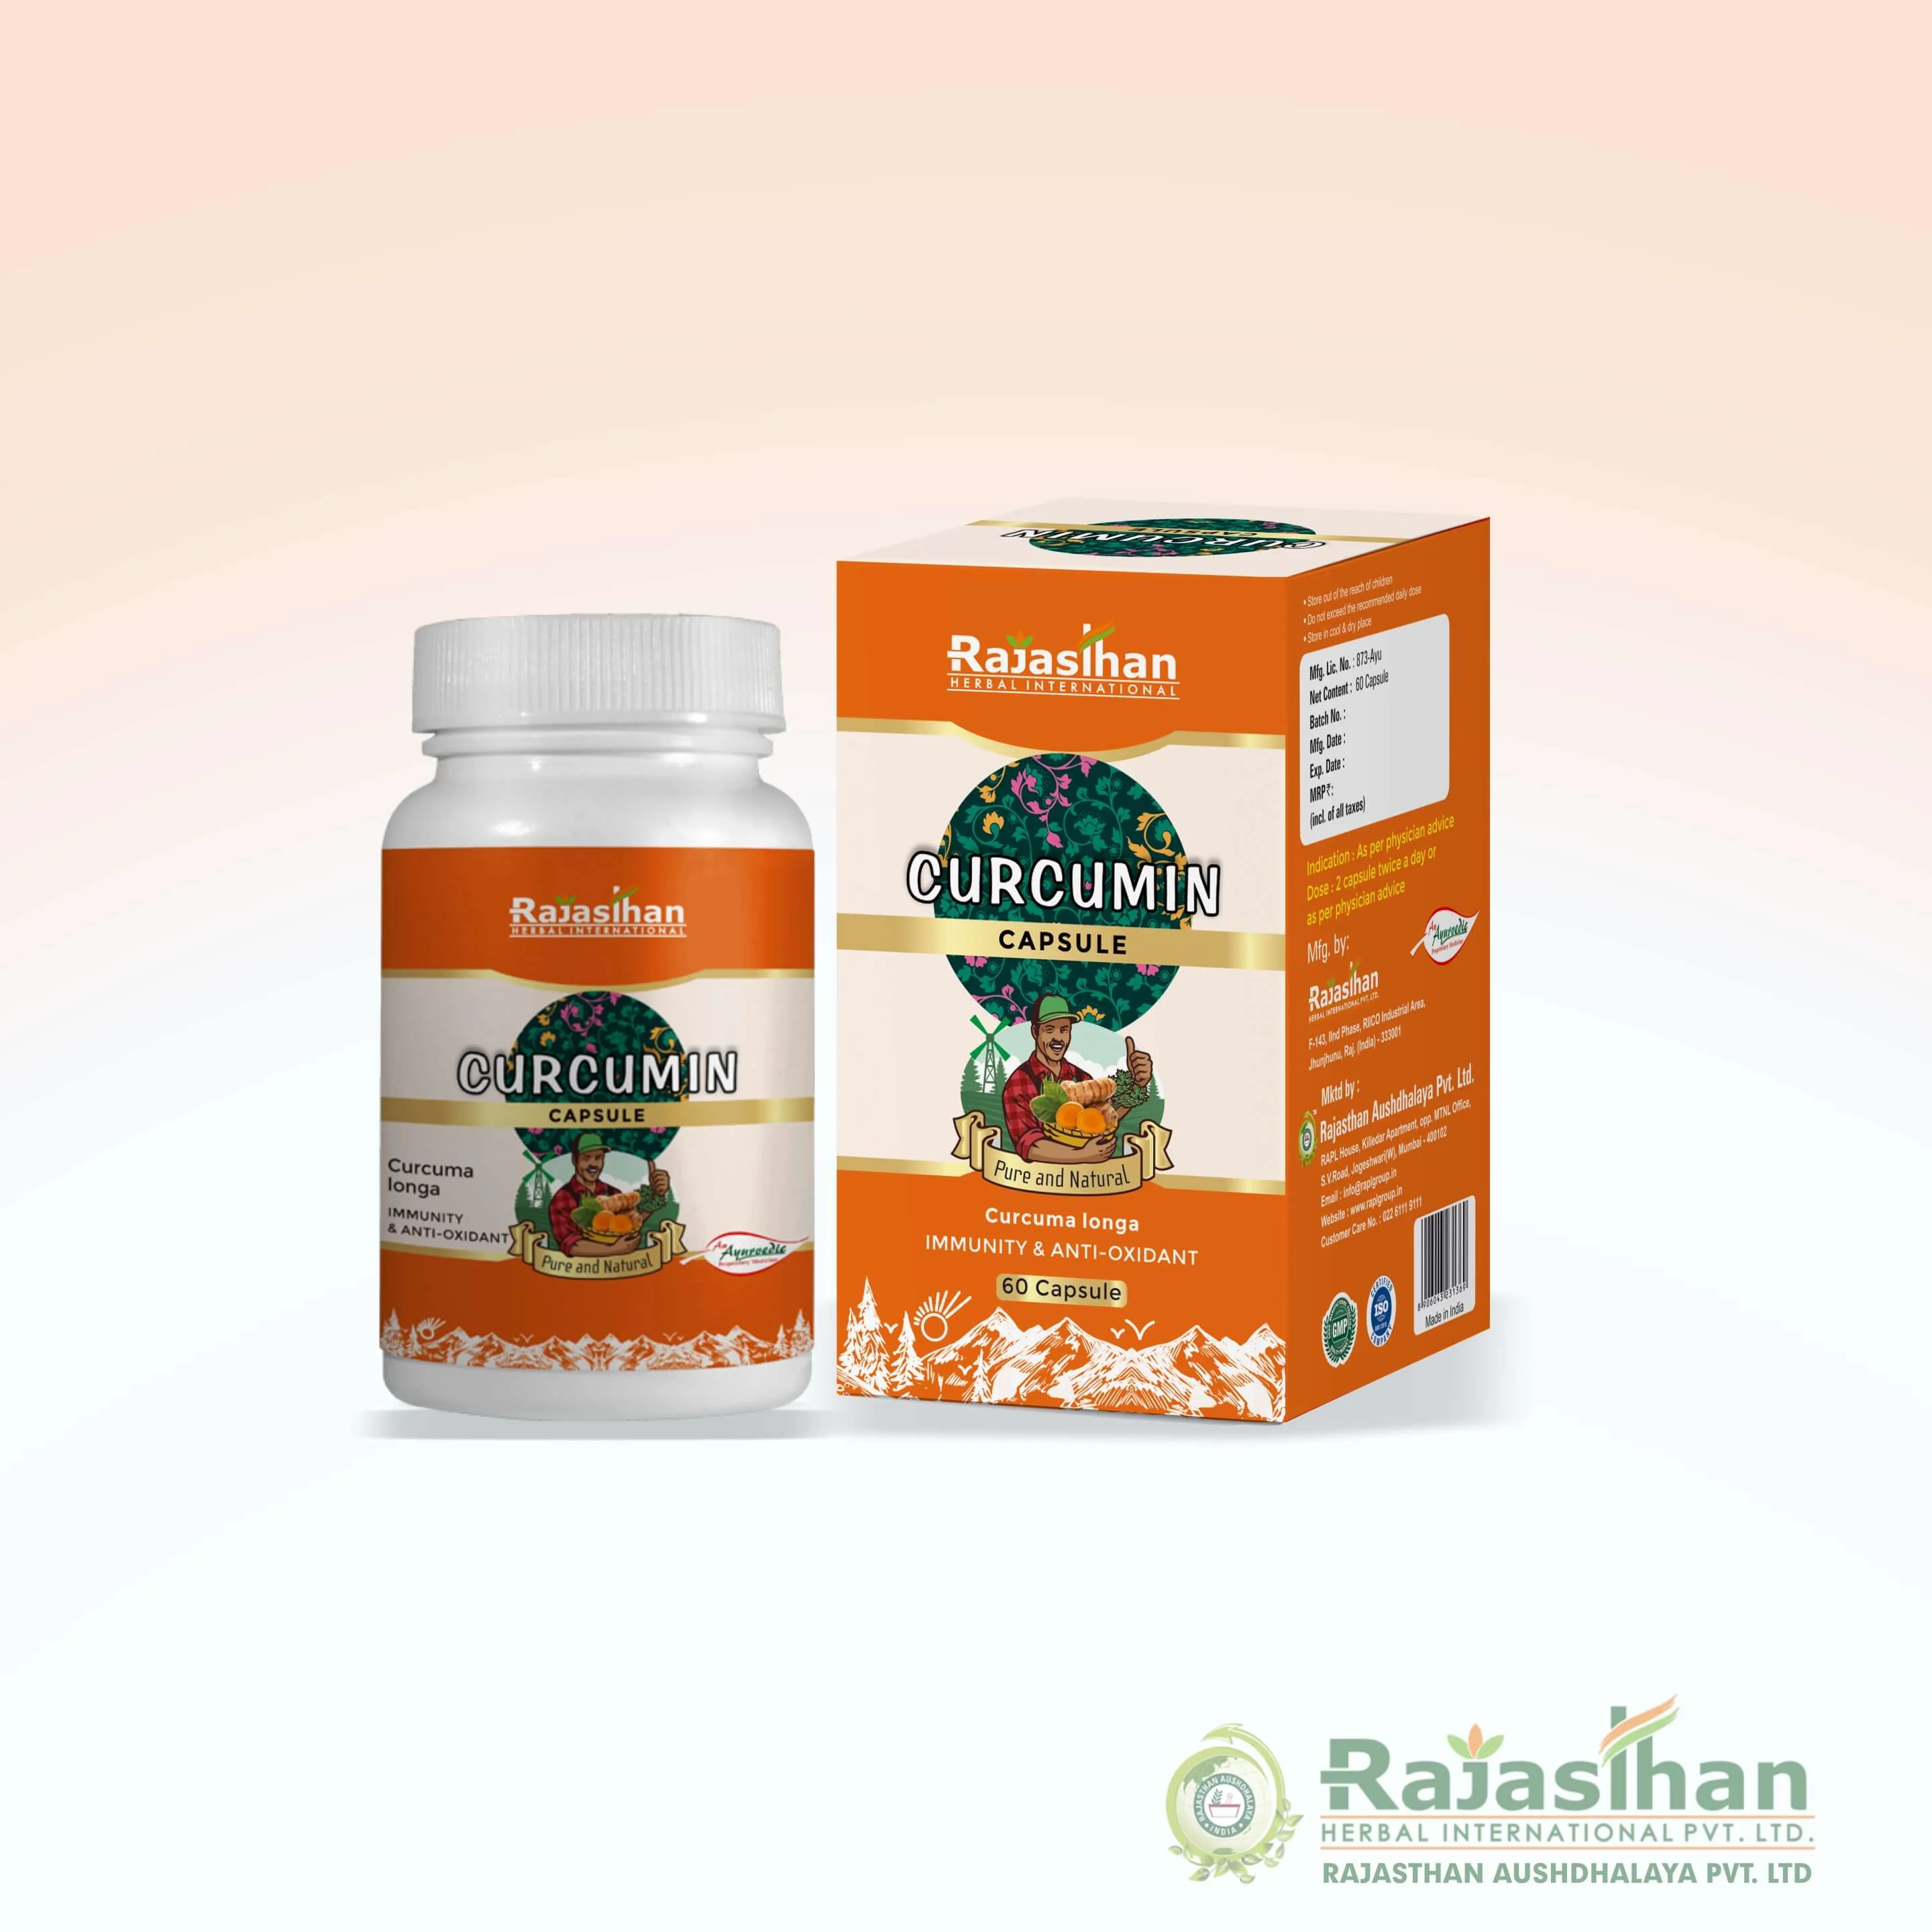 Rajasthan Herbals Curcumin Capsule 60